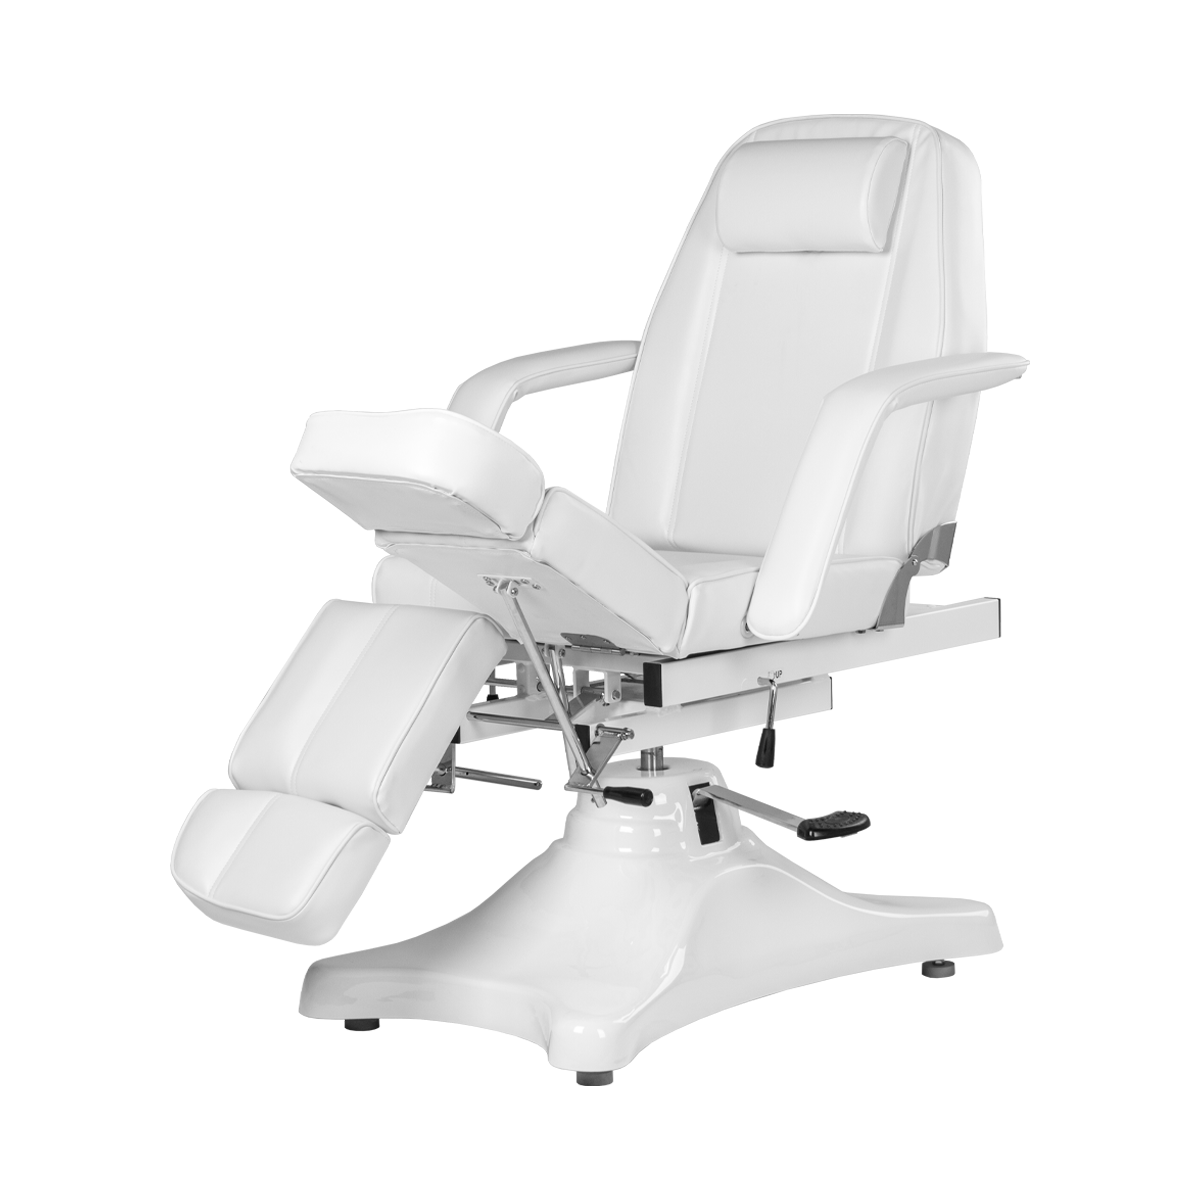 Педикюрное кресло МД-823А, гидравлика - 3 